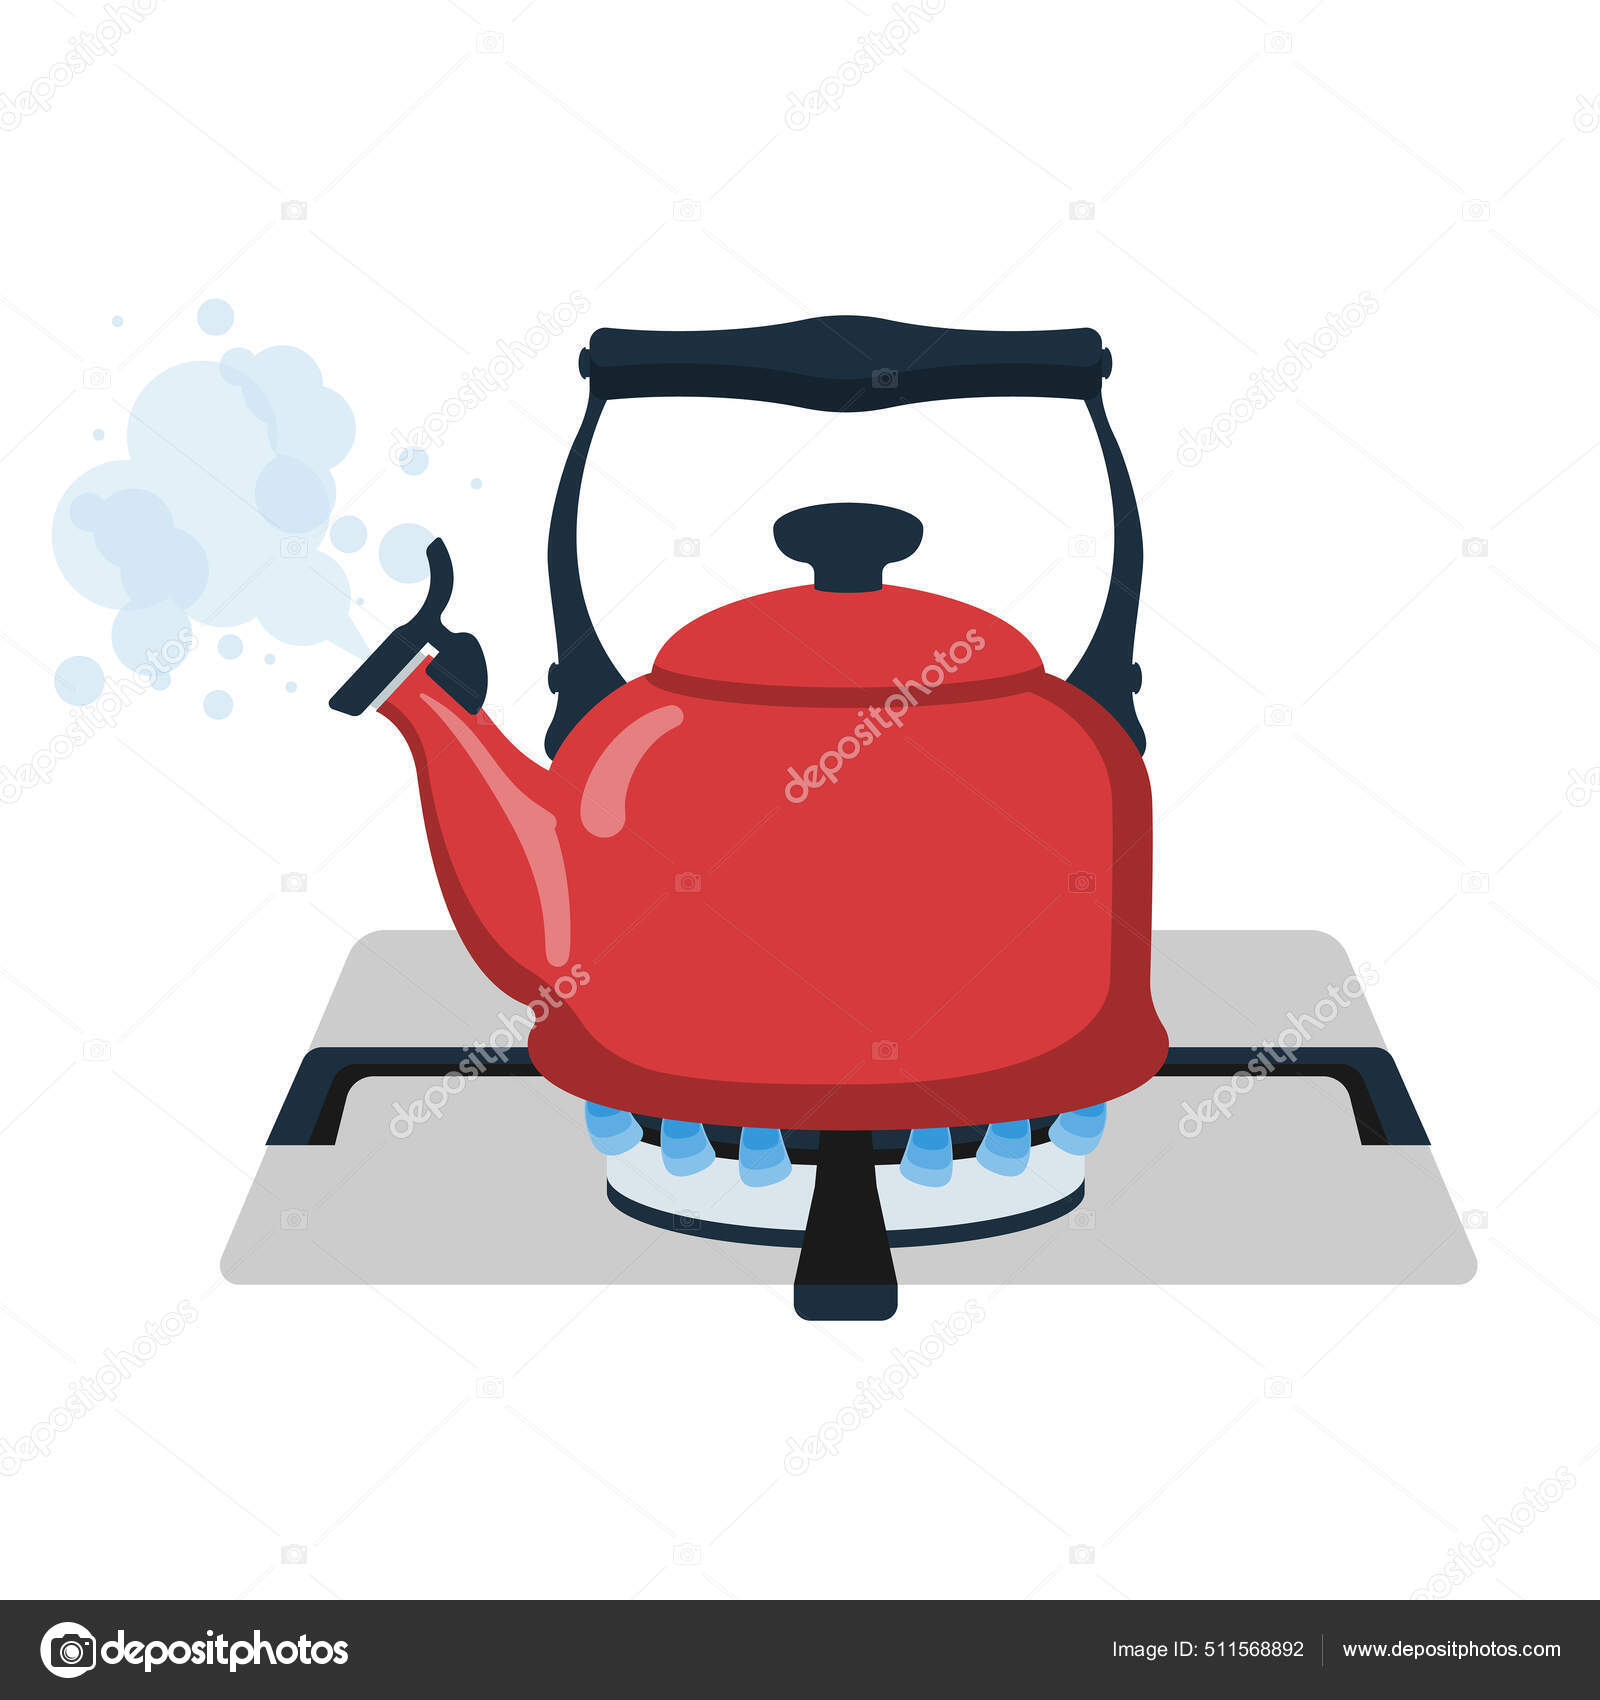 https://st.depositphotos.com/6809168/51156/v/1600/depositphotos_511568892-stock-illustration-boiling-kettle-boiling-water-kettle.jpg